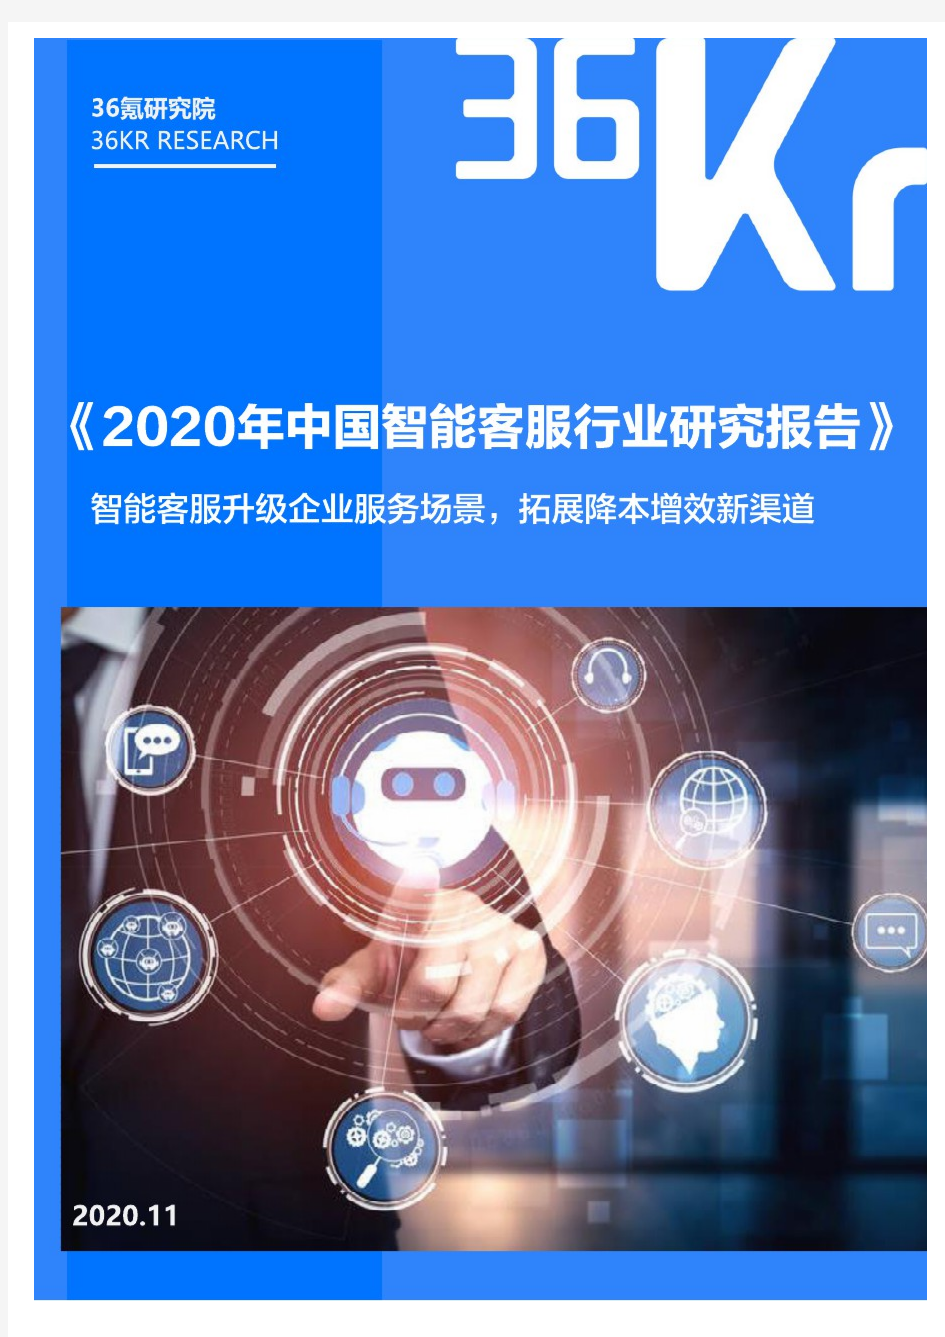 【精品报告】2020年中国智能客服行业研究报告-36Kr